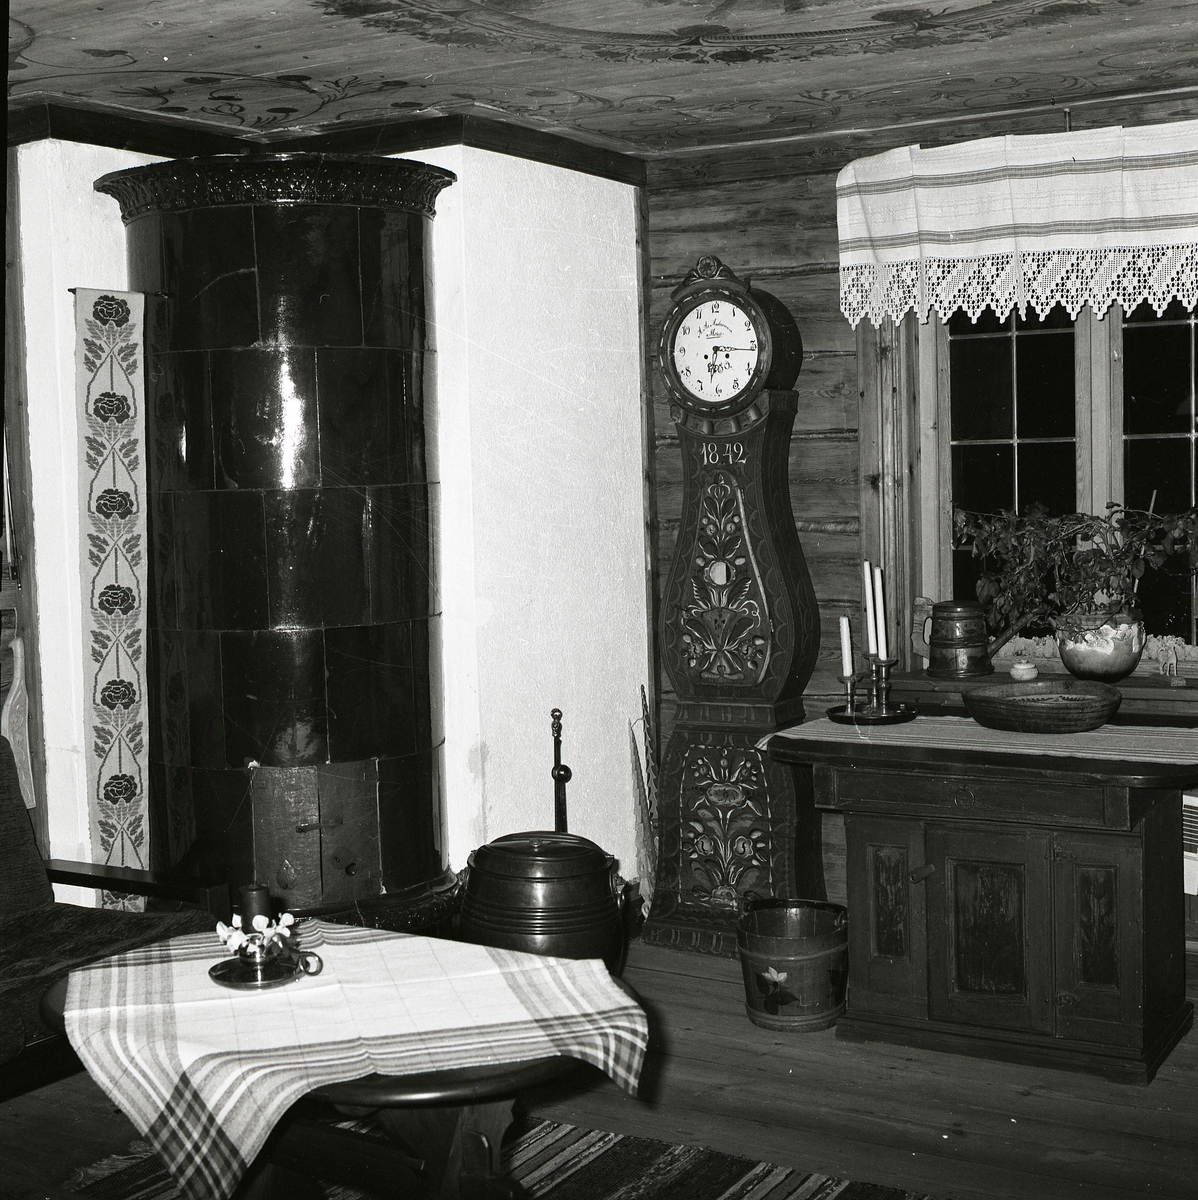 Interiör med takmålning från gården Sunnanåker, 12 juni 1981. Där finns en kakelugn, ett golvur och en skänkskåp i trä.